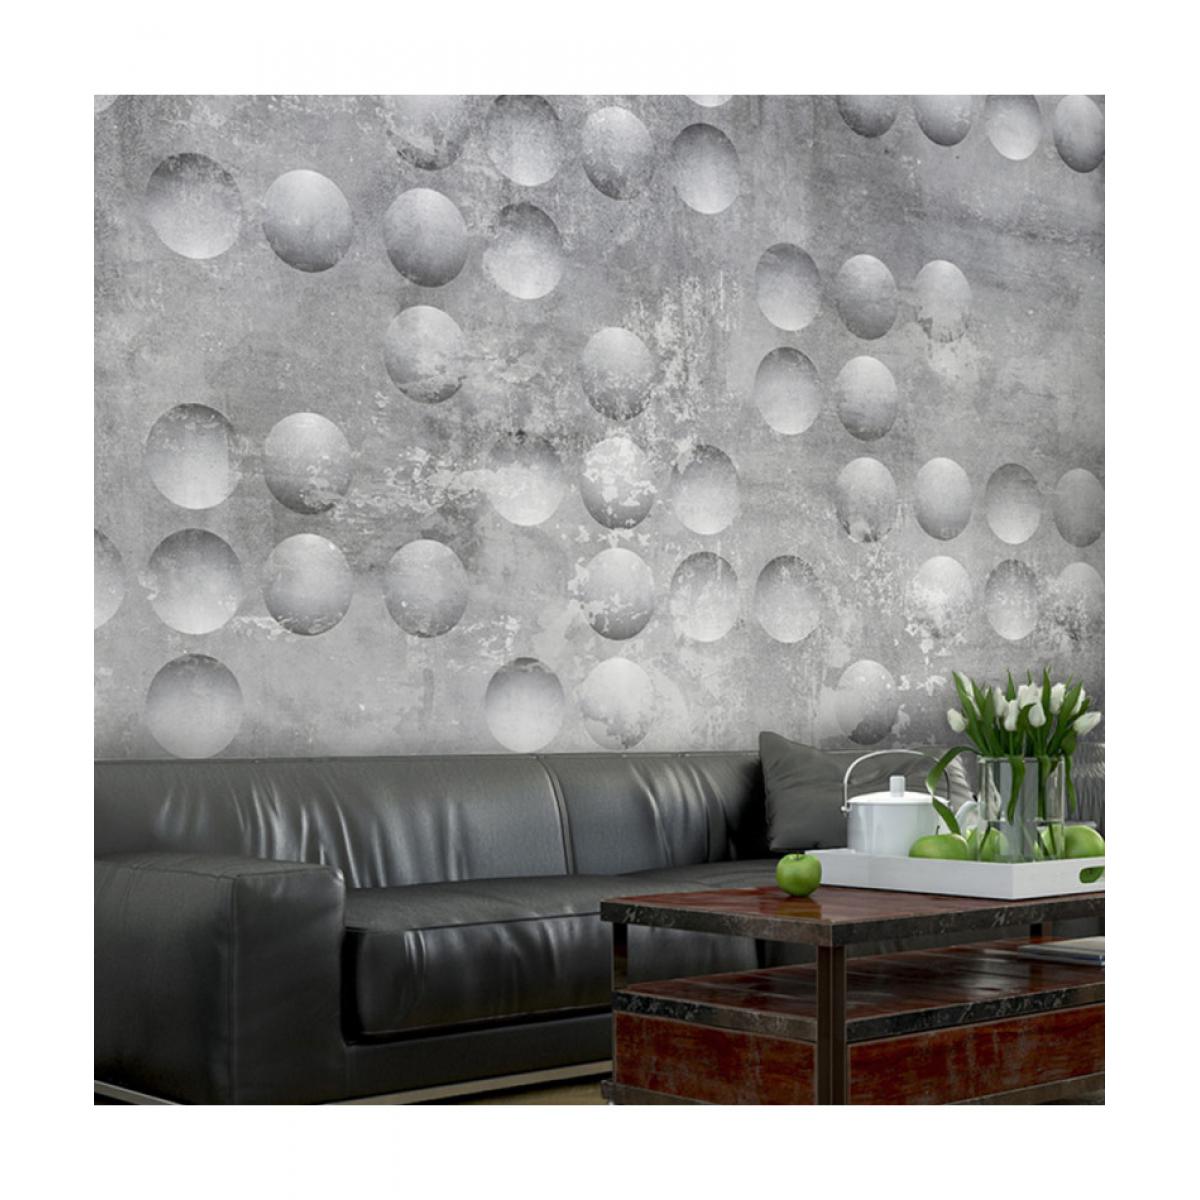 Artgeist - Papier peint - Dancing bubbles 100x70 - Papier peint